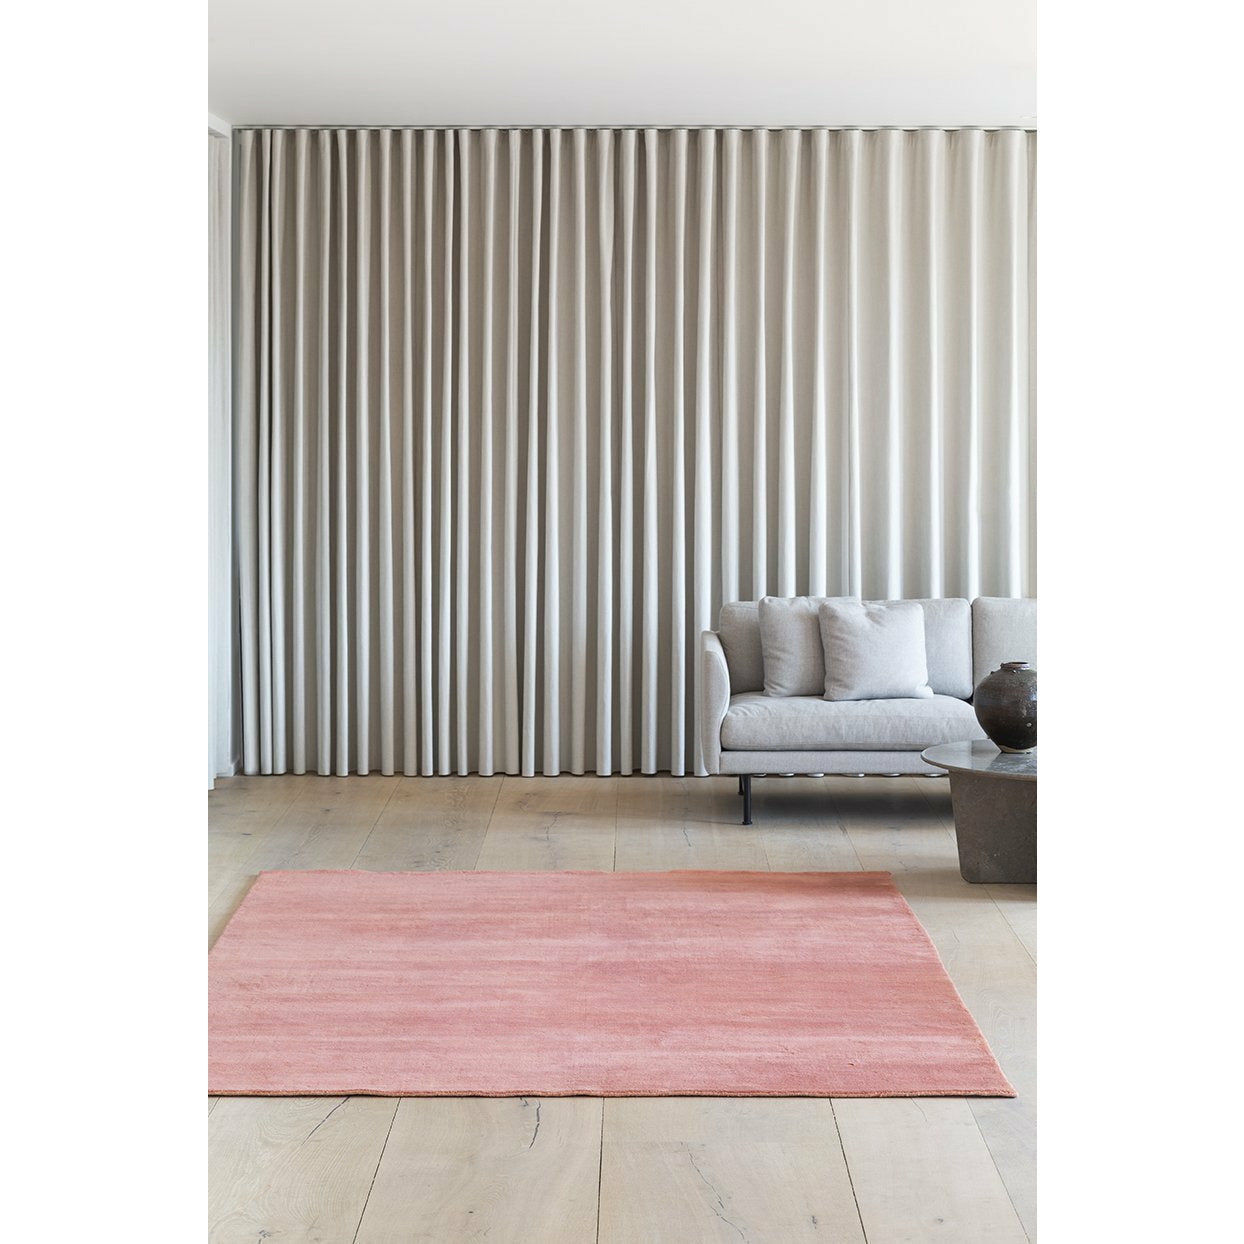 Massimo Earth Bambus Teppich Terrakotta, 140x200 cm